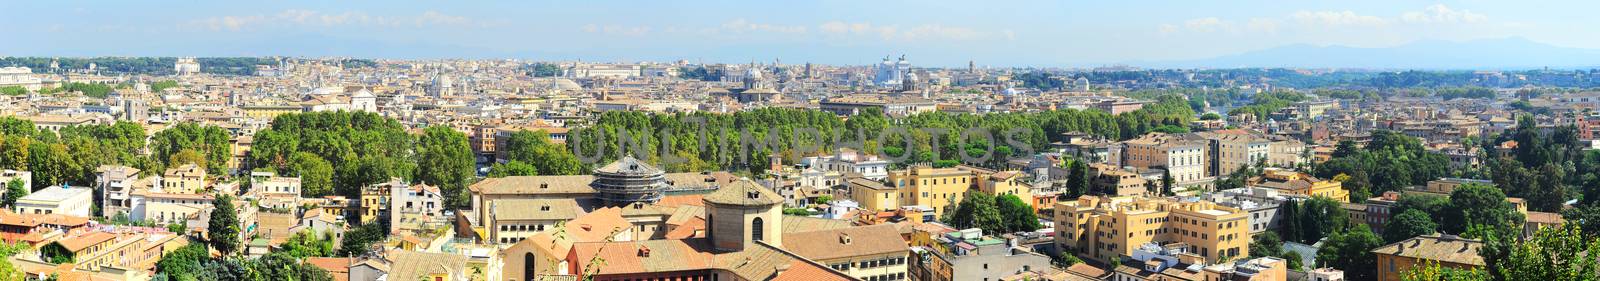 Rome panorama by joyfull